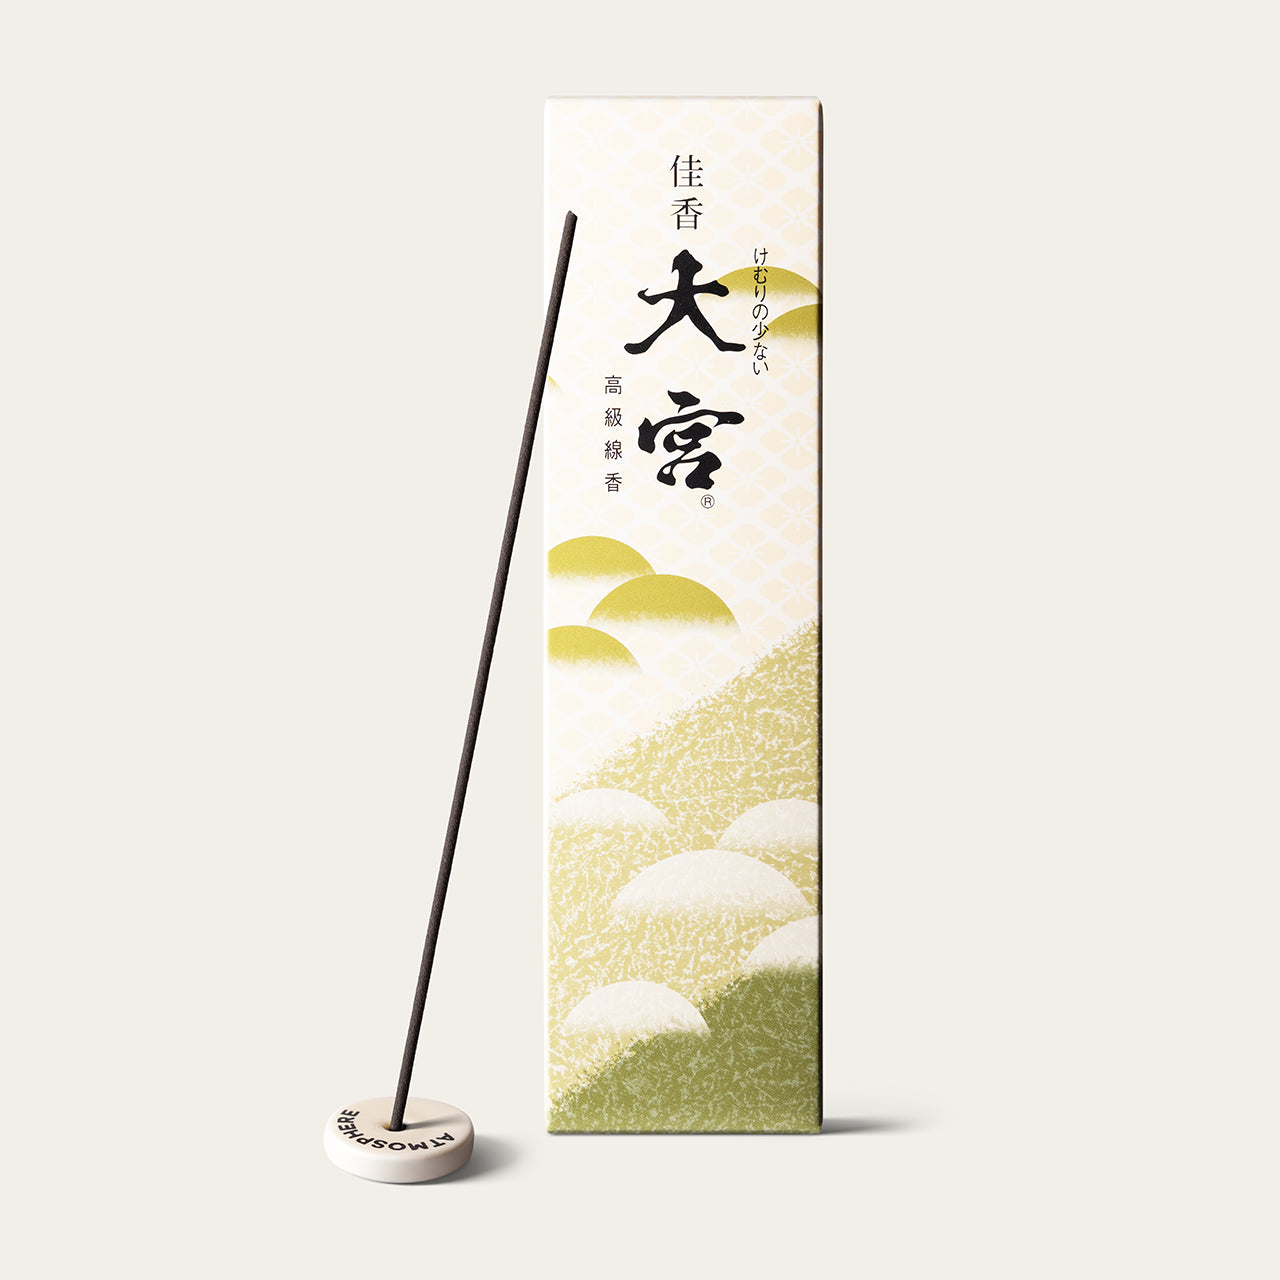 Gyokushodo Kako Omiya Grand Palace Low Smoke Japanese incense sticks (25 sticks) with Atmosphere ceramic incense holder